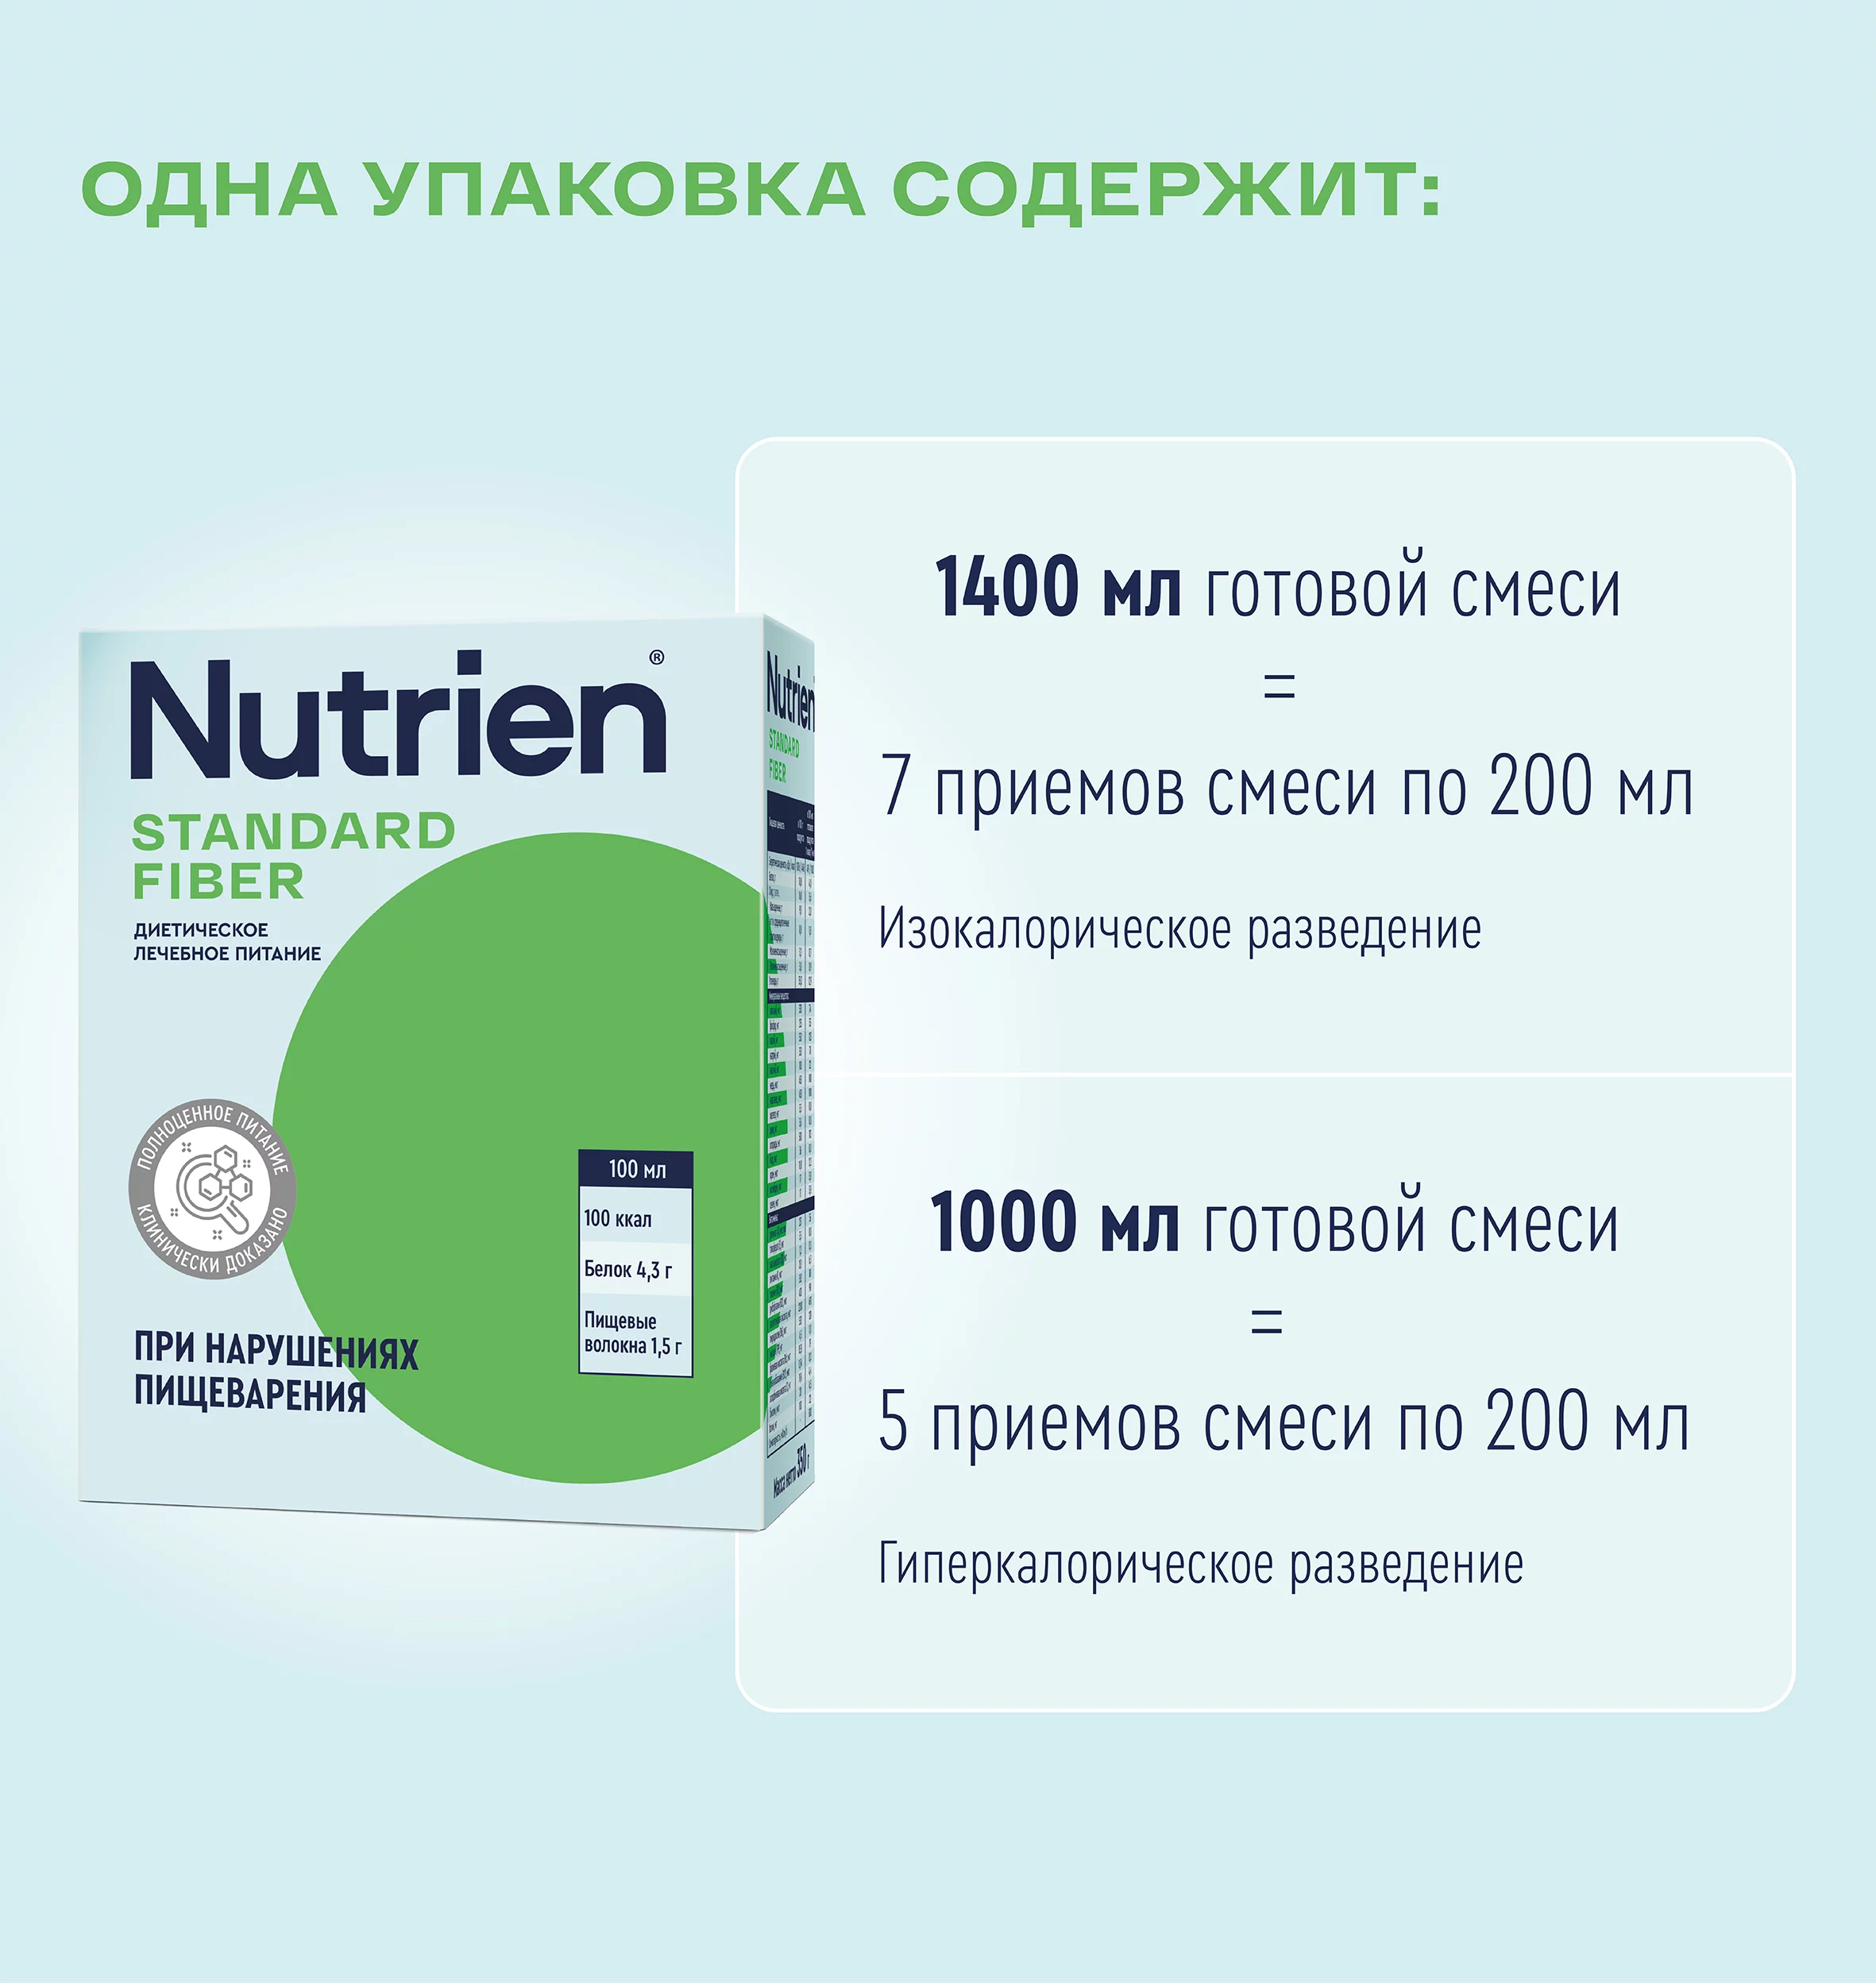 Nutrien Standard Fiber - 6